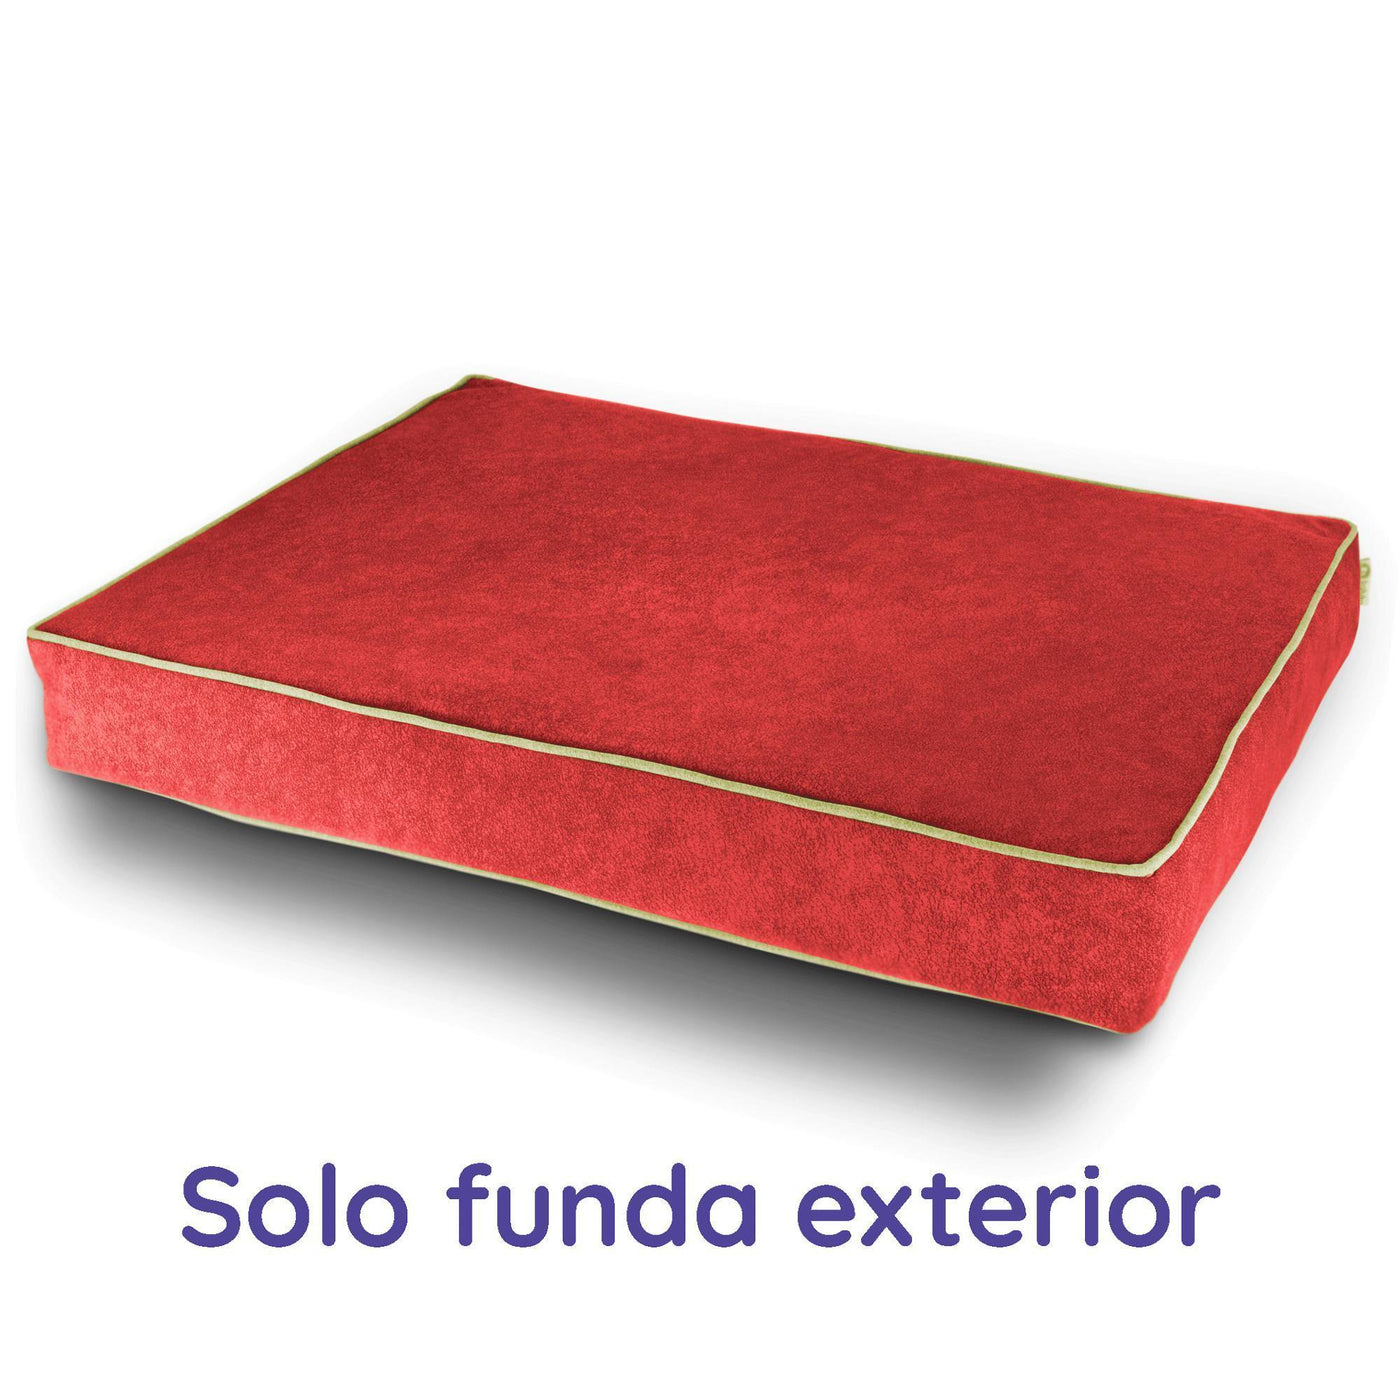 Funda Exterior EXTRA (SOLO FUNDA) y para gatos ortopédico terapéutico antipelo Descanso vendor-unknown L (100 x 70 cm) Rojo Cereza 